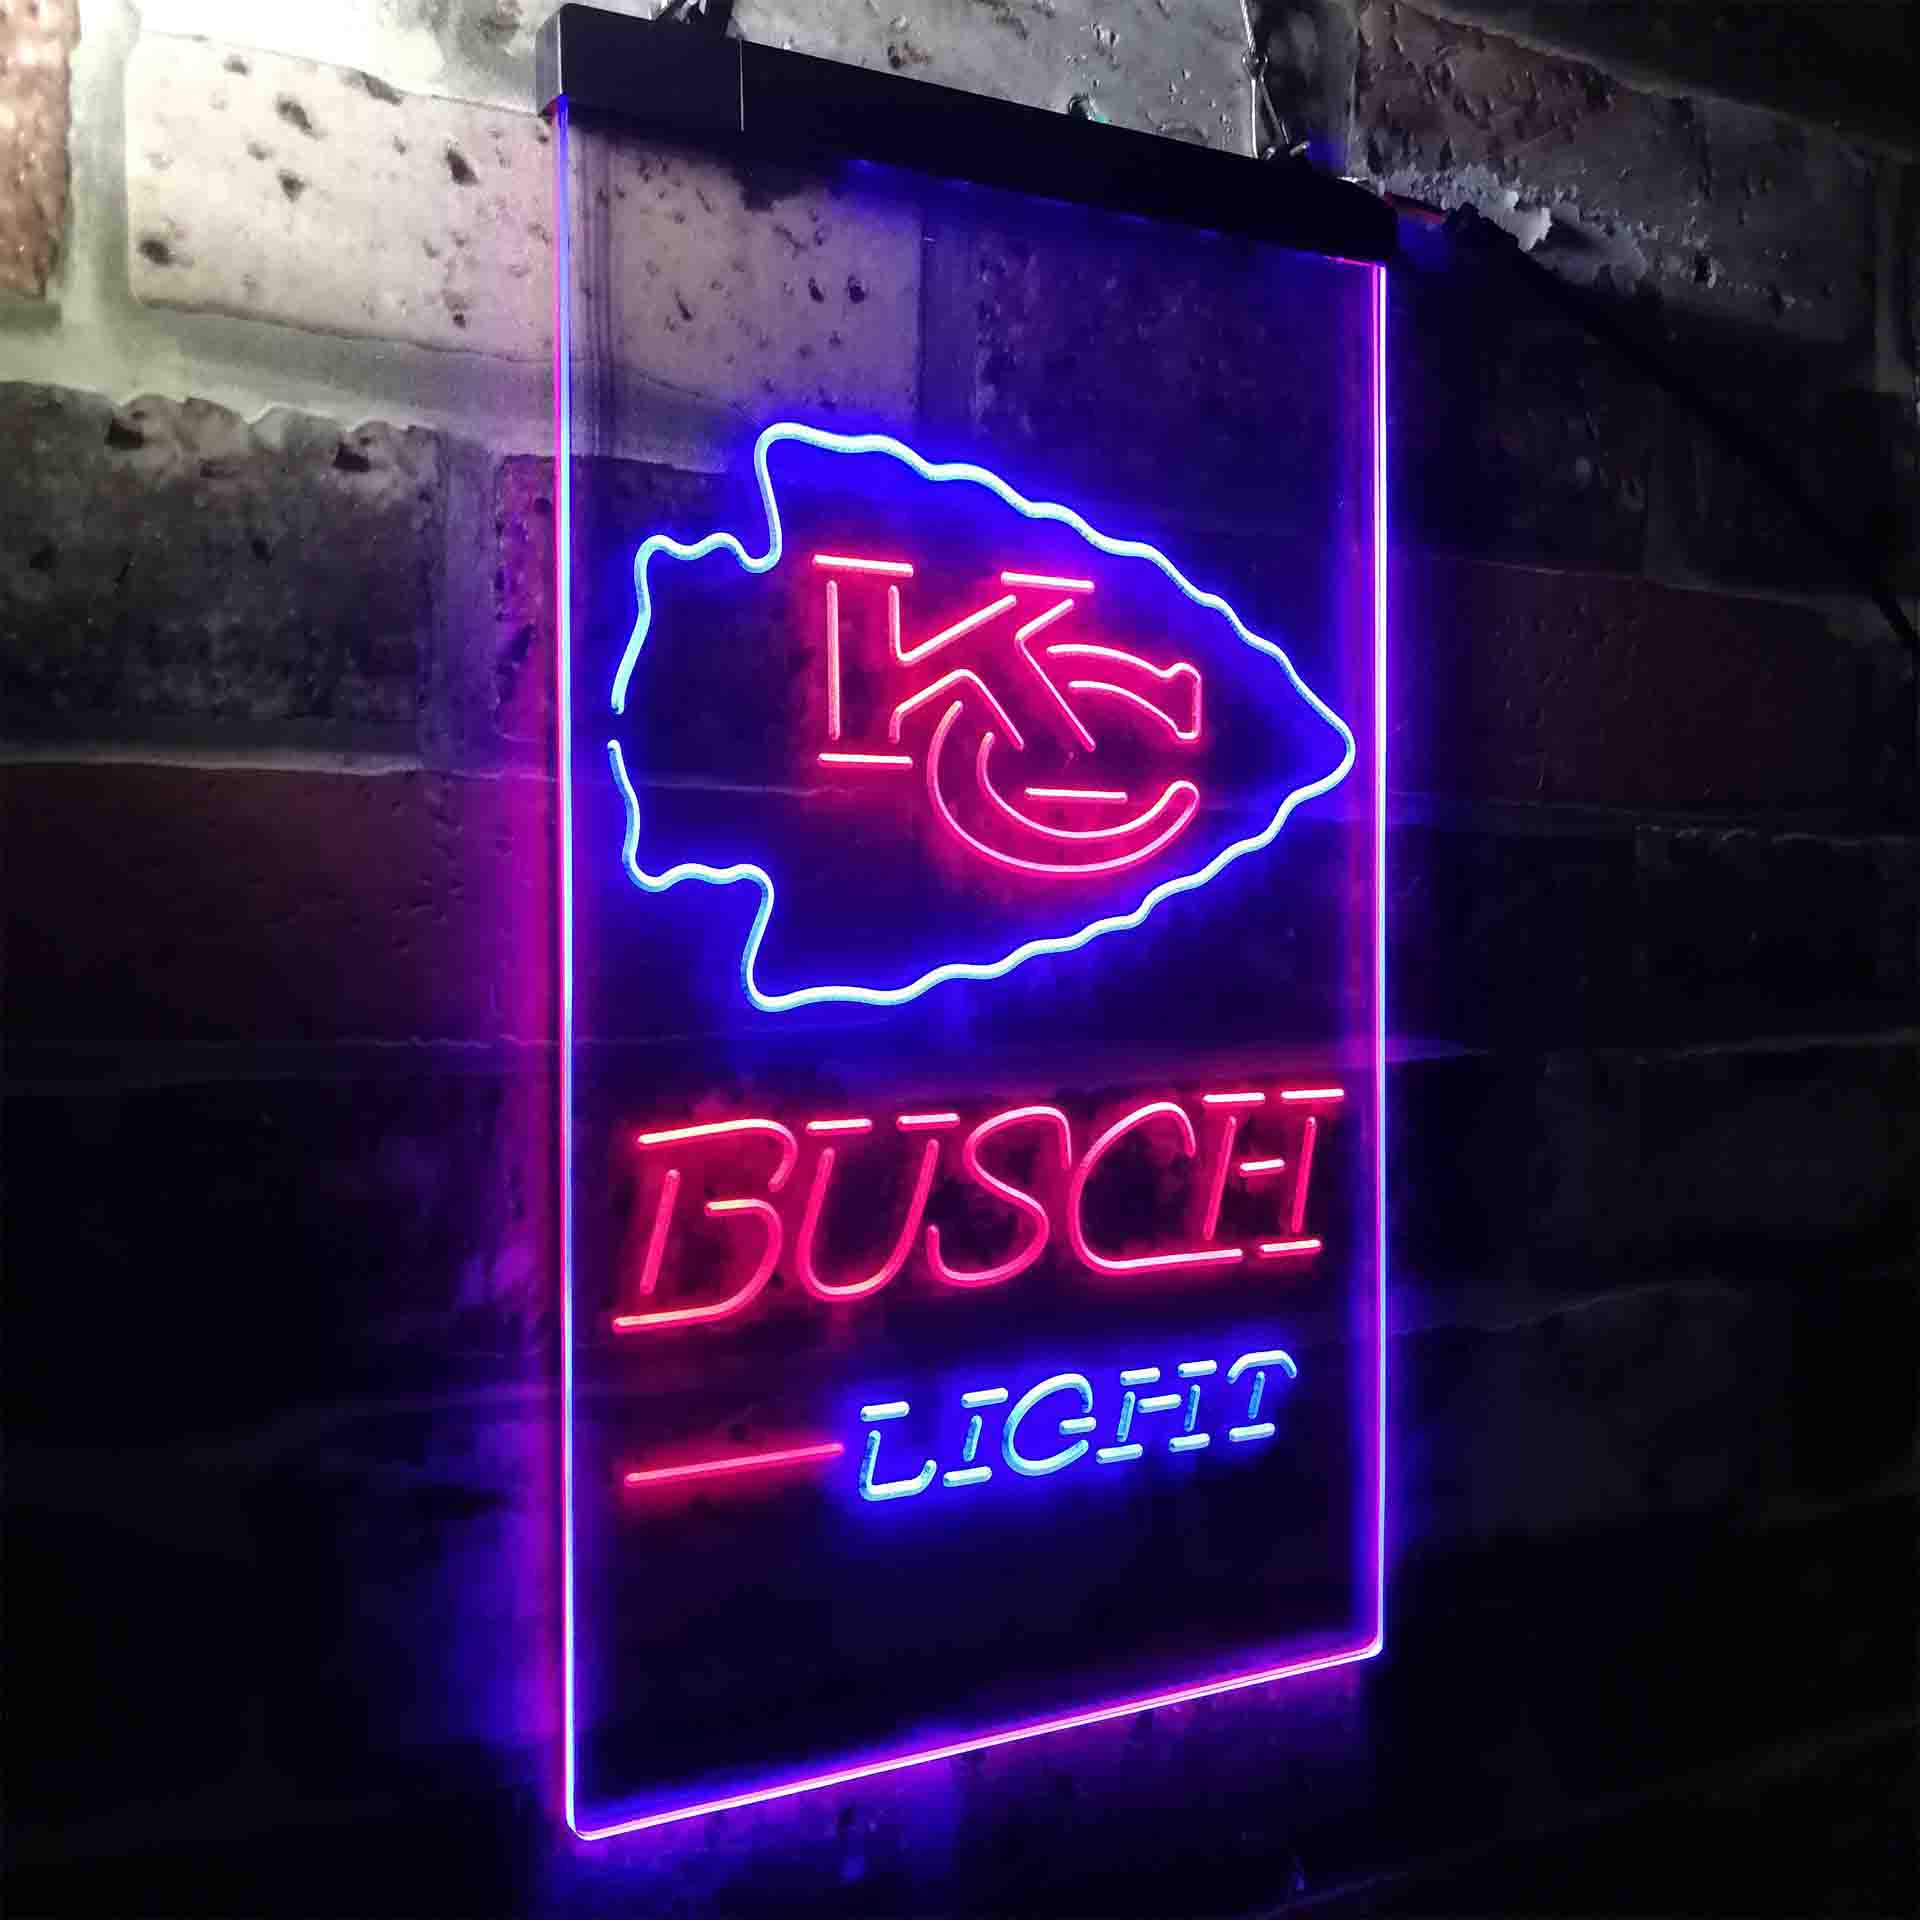 Kansas City Chiefs Busch Light Neon-Like LED Sign